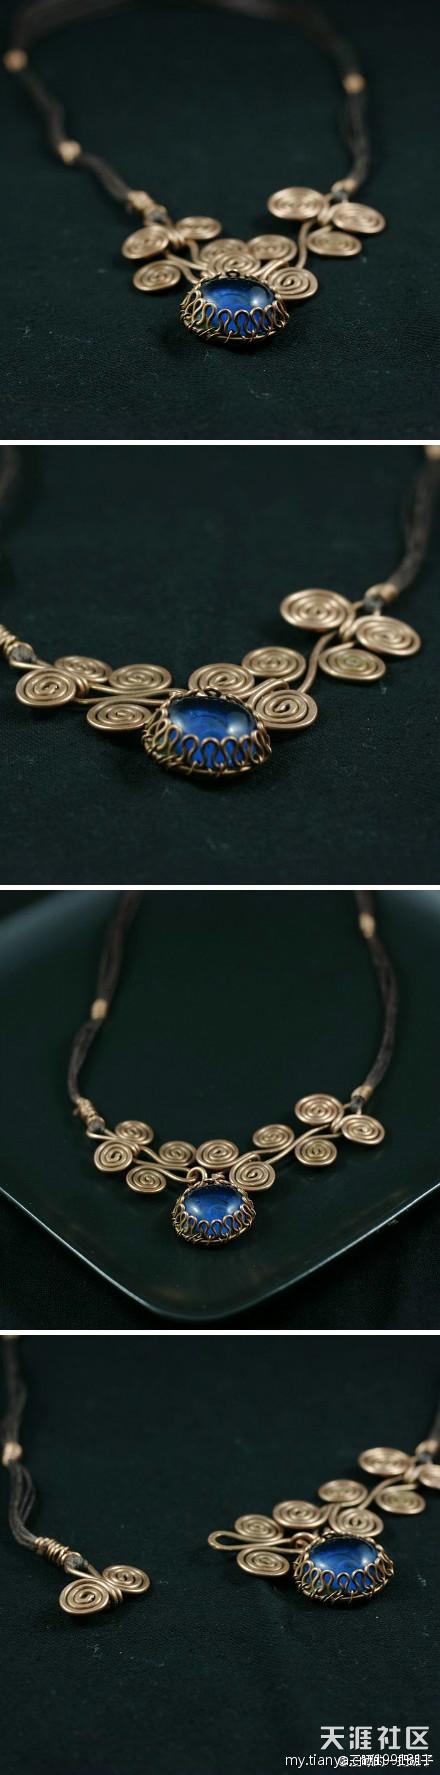 原创首饰wire jewelry项链，复古风格，蓝色琉璃、红铜、棕色蜡线